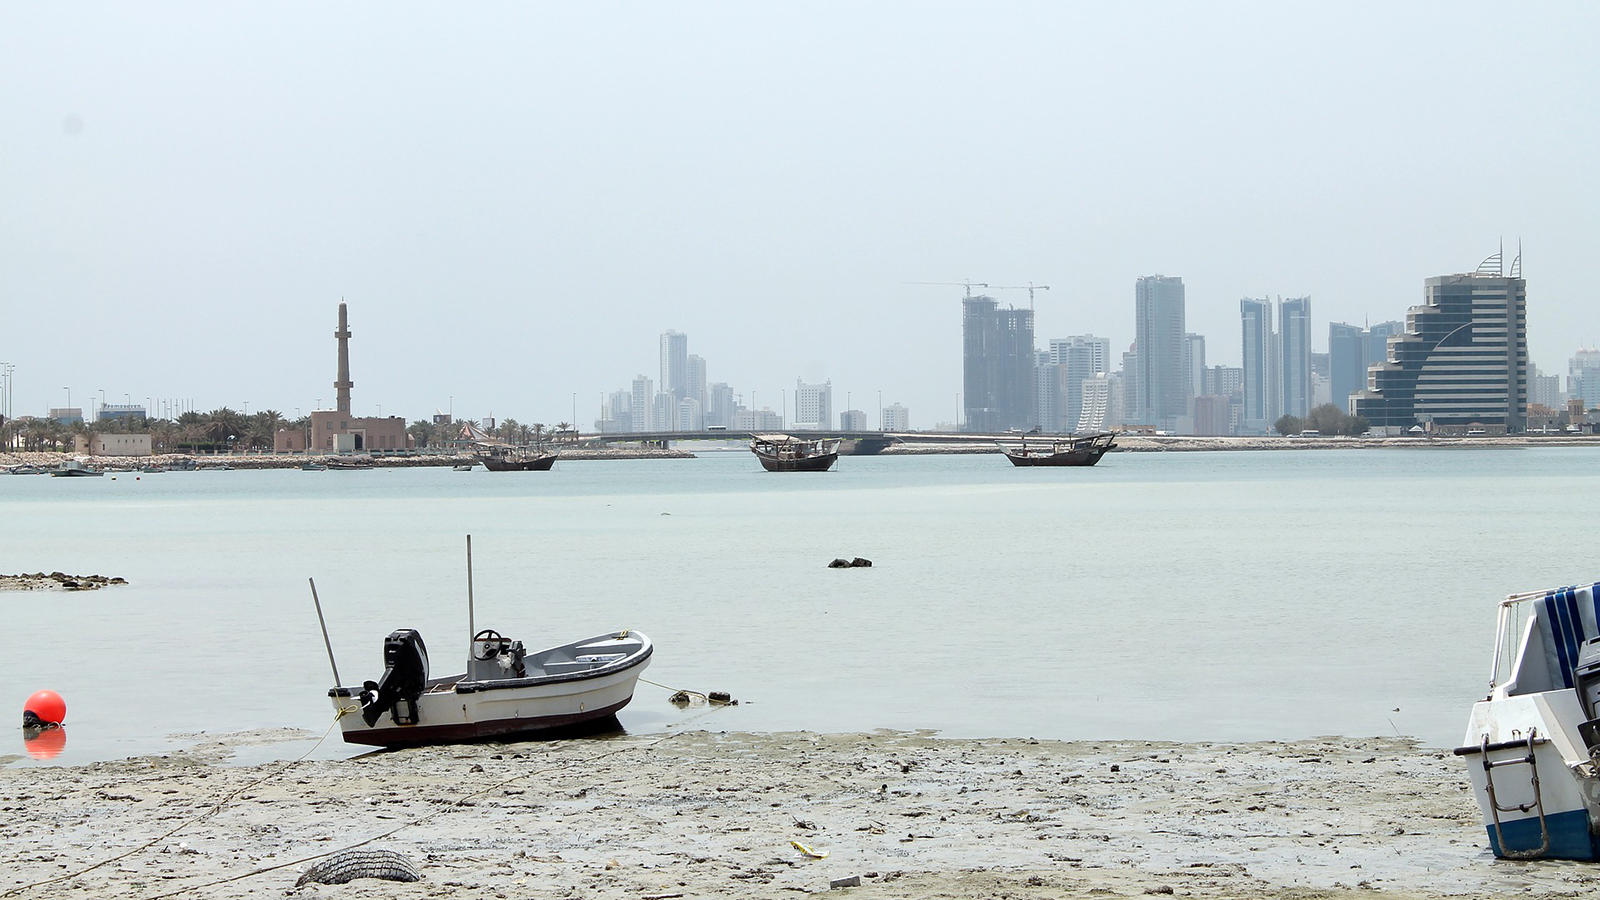 ‪مدينة المنامة تحتل المرتبة الخامسة في قائمة المدن الأكثر تلوثا‬ (بيكسابي)